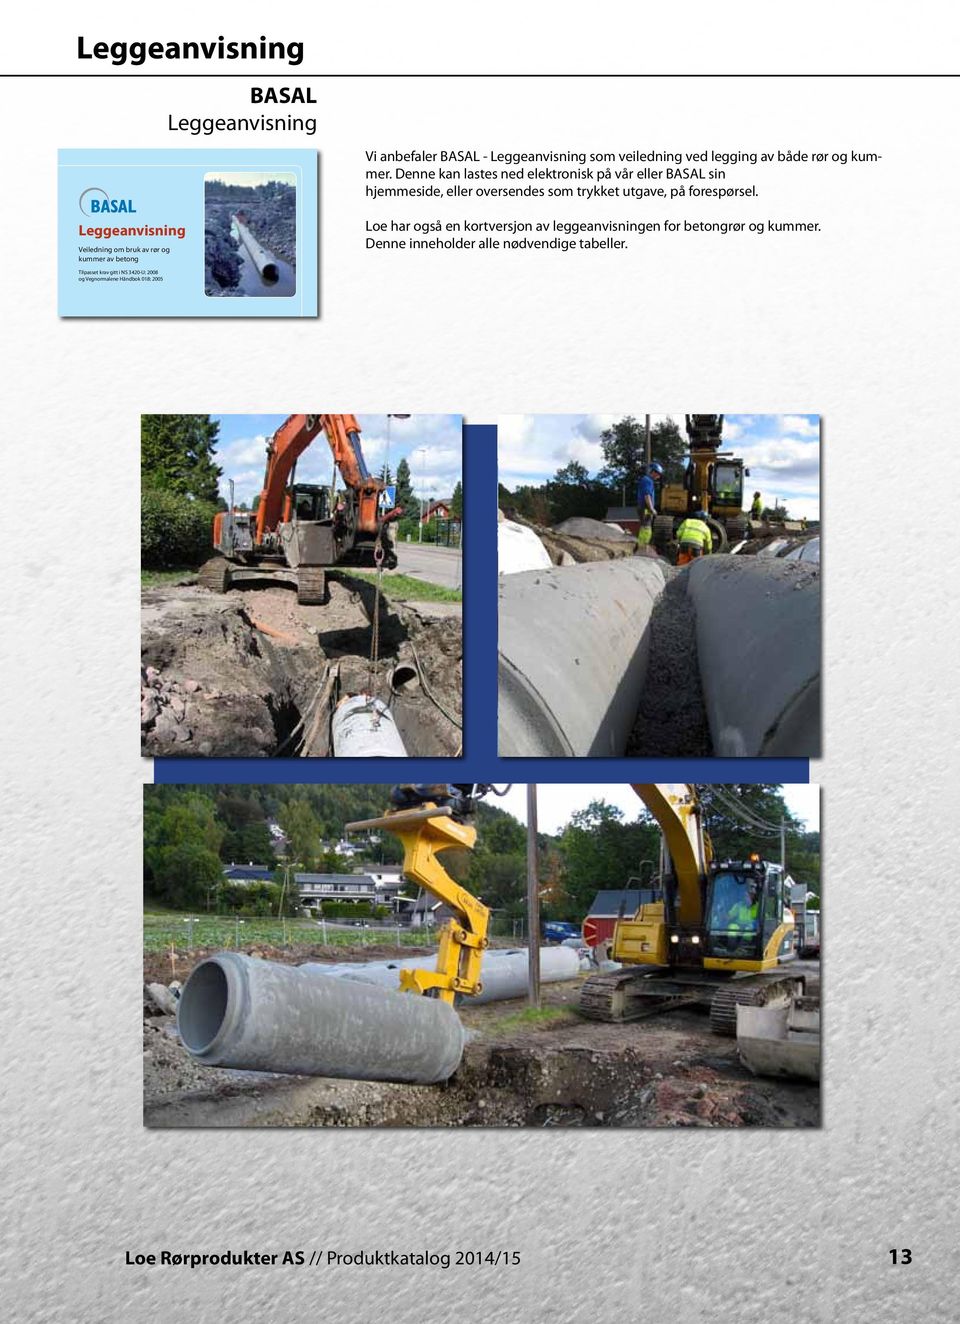 Leggeanvisning Veiledning om bruk av rør og kuer av betong Loe har også en kortversjon av leggeanvisningen for betongrør og kuer.